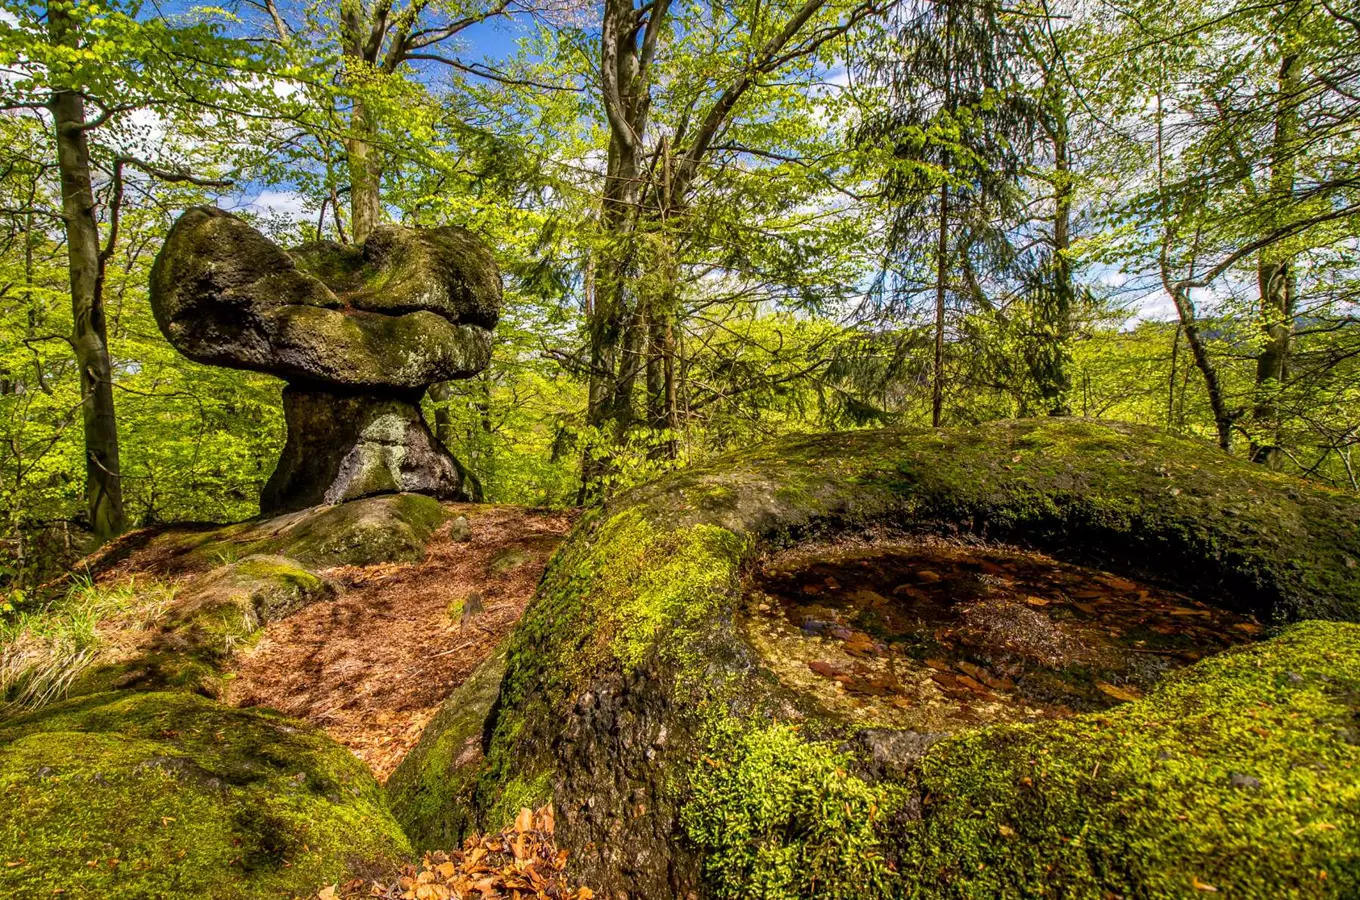 Národní přírodní rezervace Jizerskohorské bučiny, kudy z nudy, Zdroj foto: Visit Jablonec